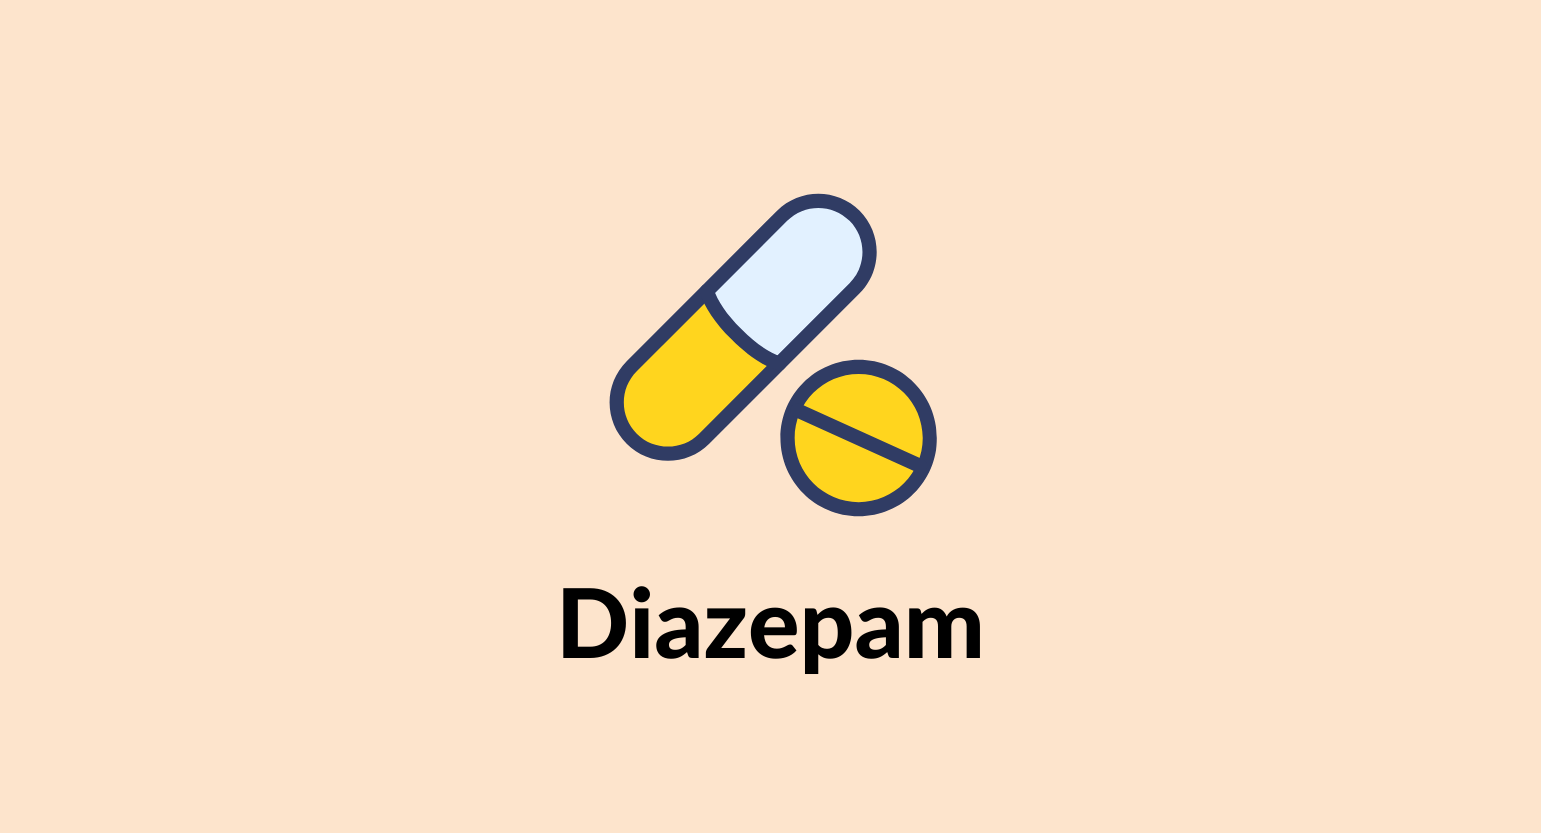 Diazepam opiniones: ¿sabes para qué sirve el Valium?